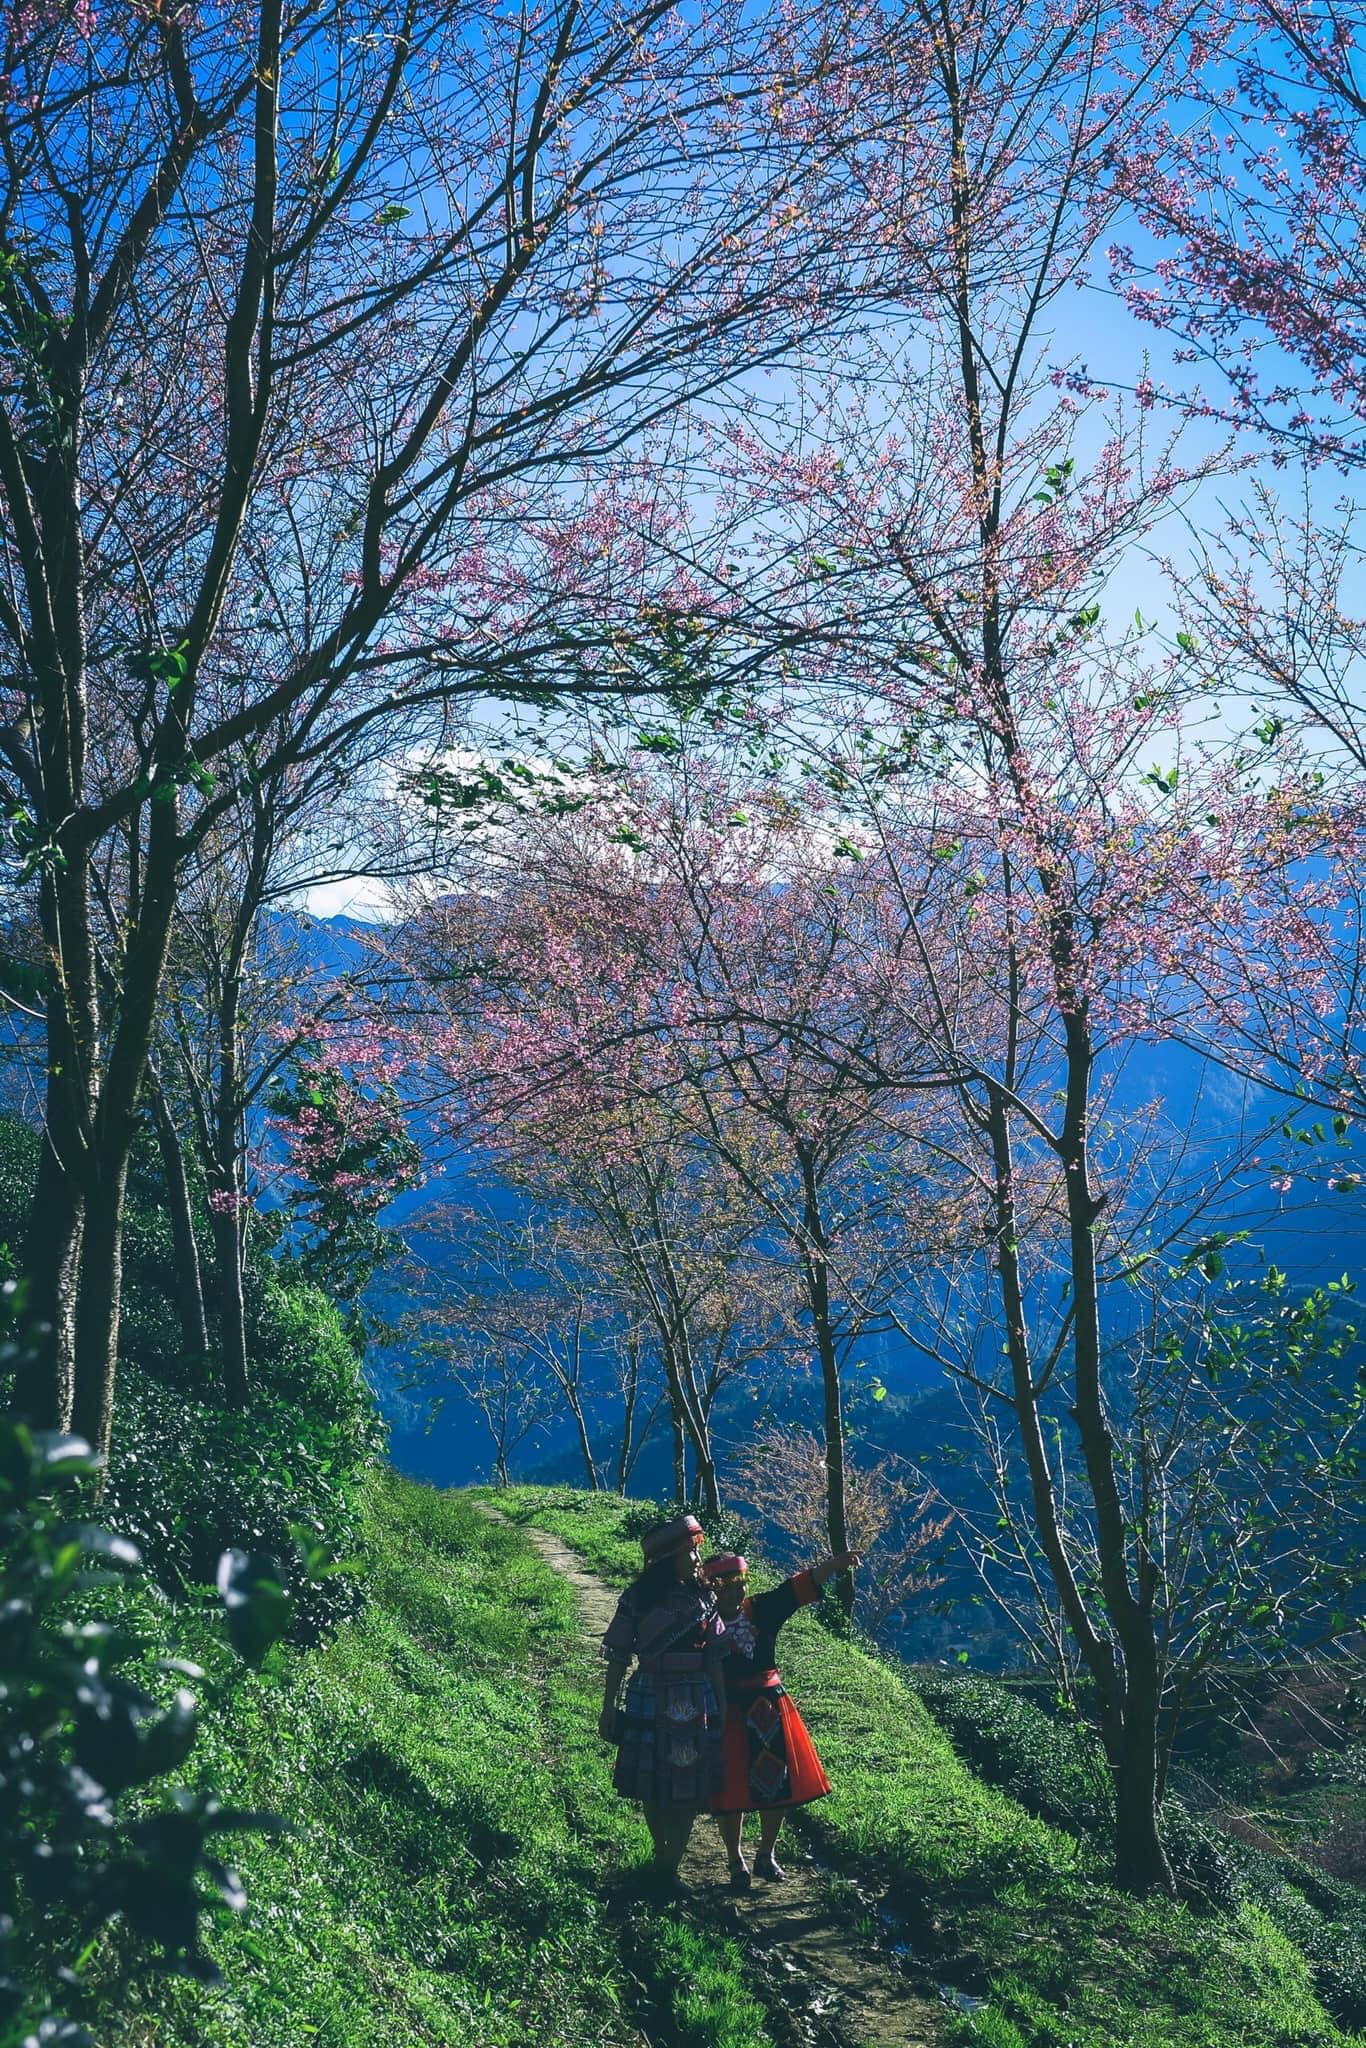 Du lịch Sa Pa mùa này để chiêm ngưỡng hoa mai anh đào nở đẹp như tiên cảnh